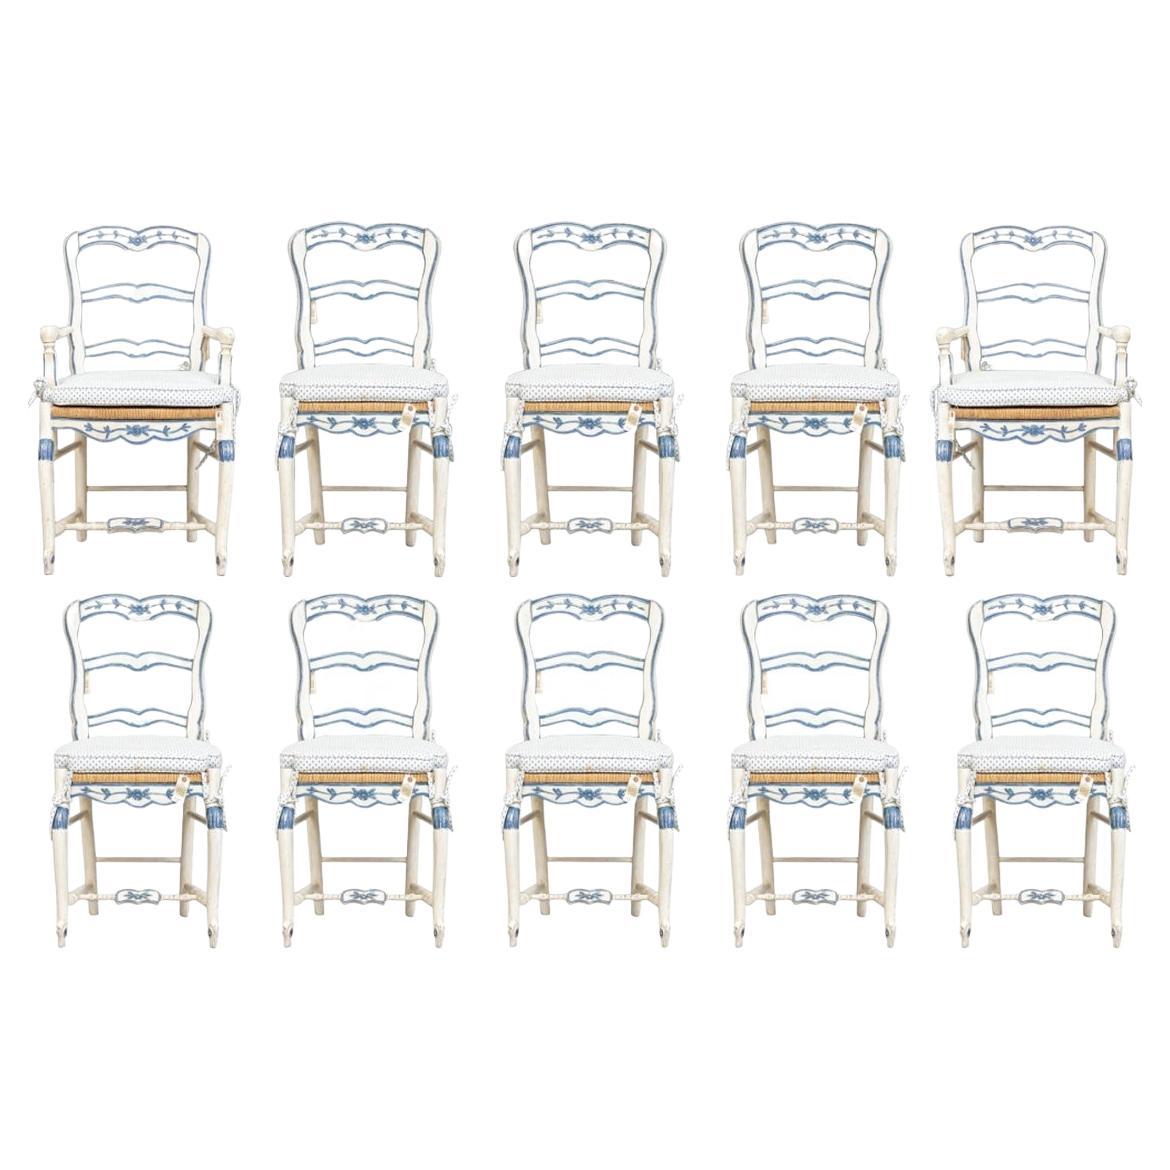 Ensemble de 10 chaises de salle à manger provinciales françaises peintes de style Louis XV